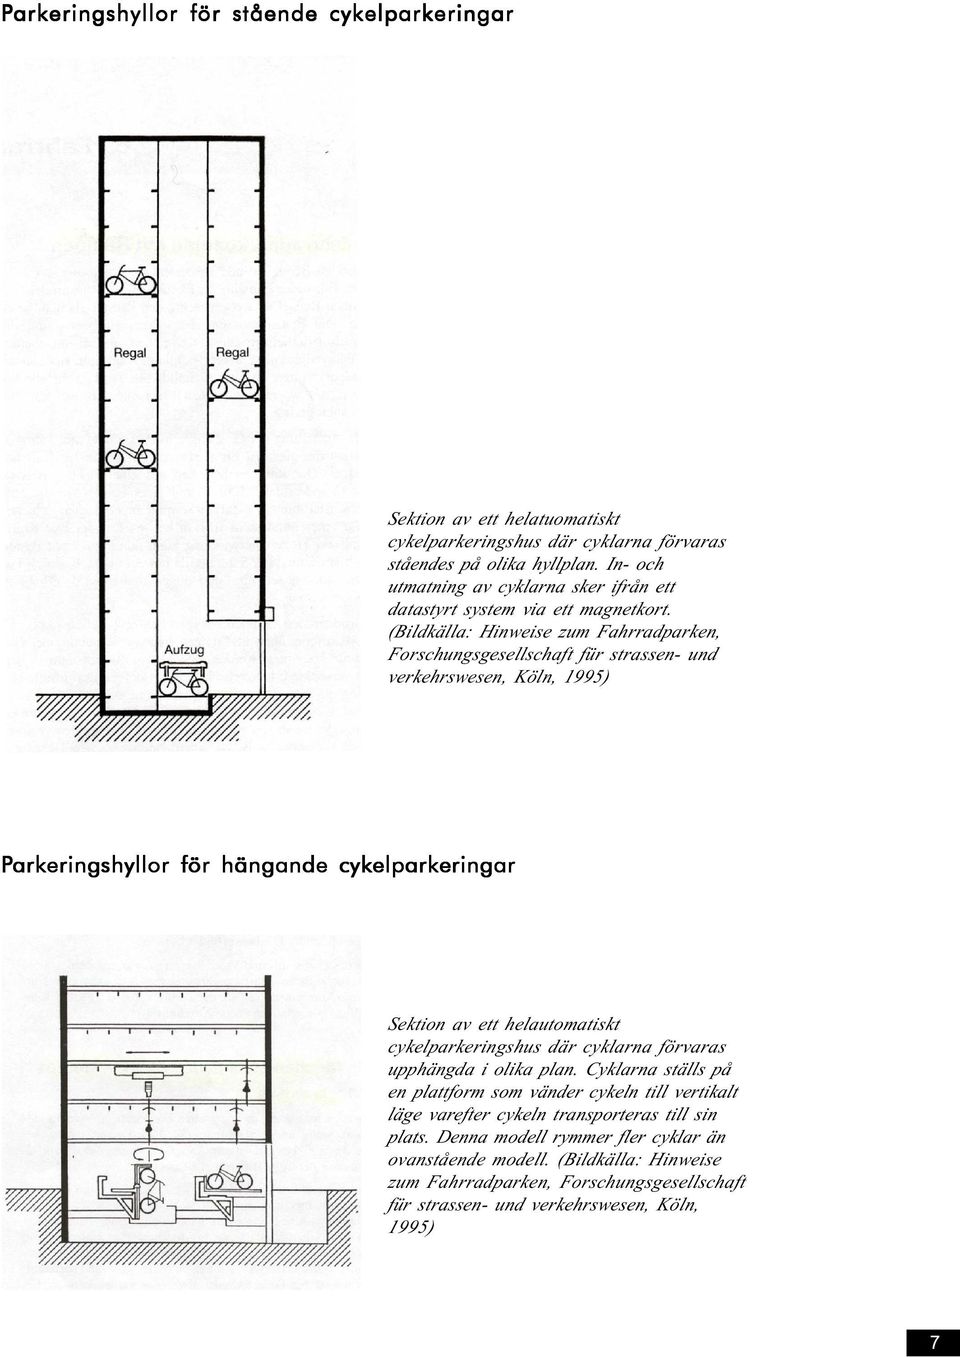 (Bildkälla: Hinweise zum Fahrradparken, Forschungsgesellschaft für strassen- und verkehrswesen, Köln, 1995) Parkeringshyllor för hängande cykelparkeringar Sektion av ett helautomatiskt